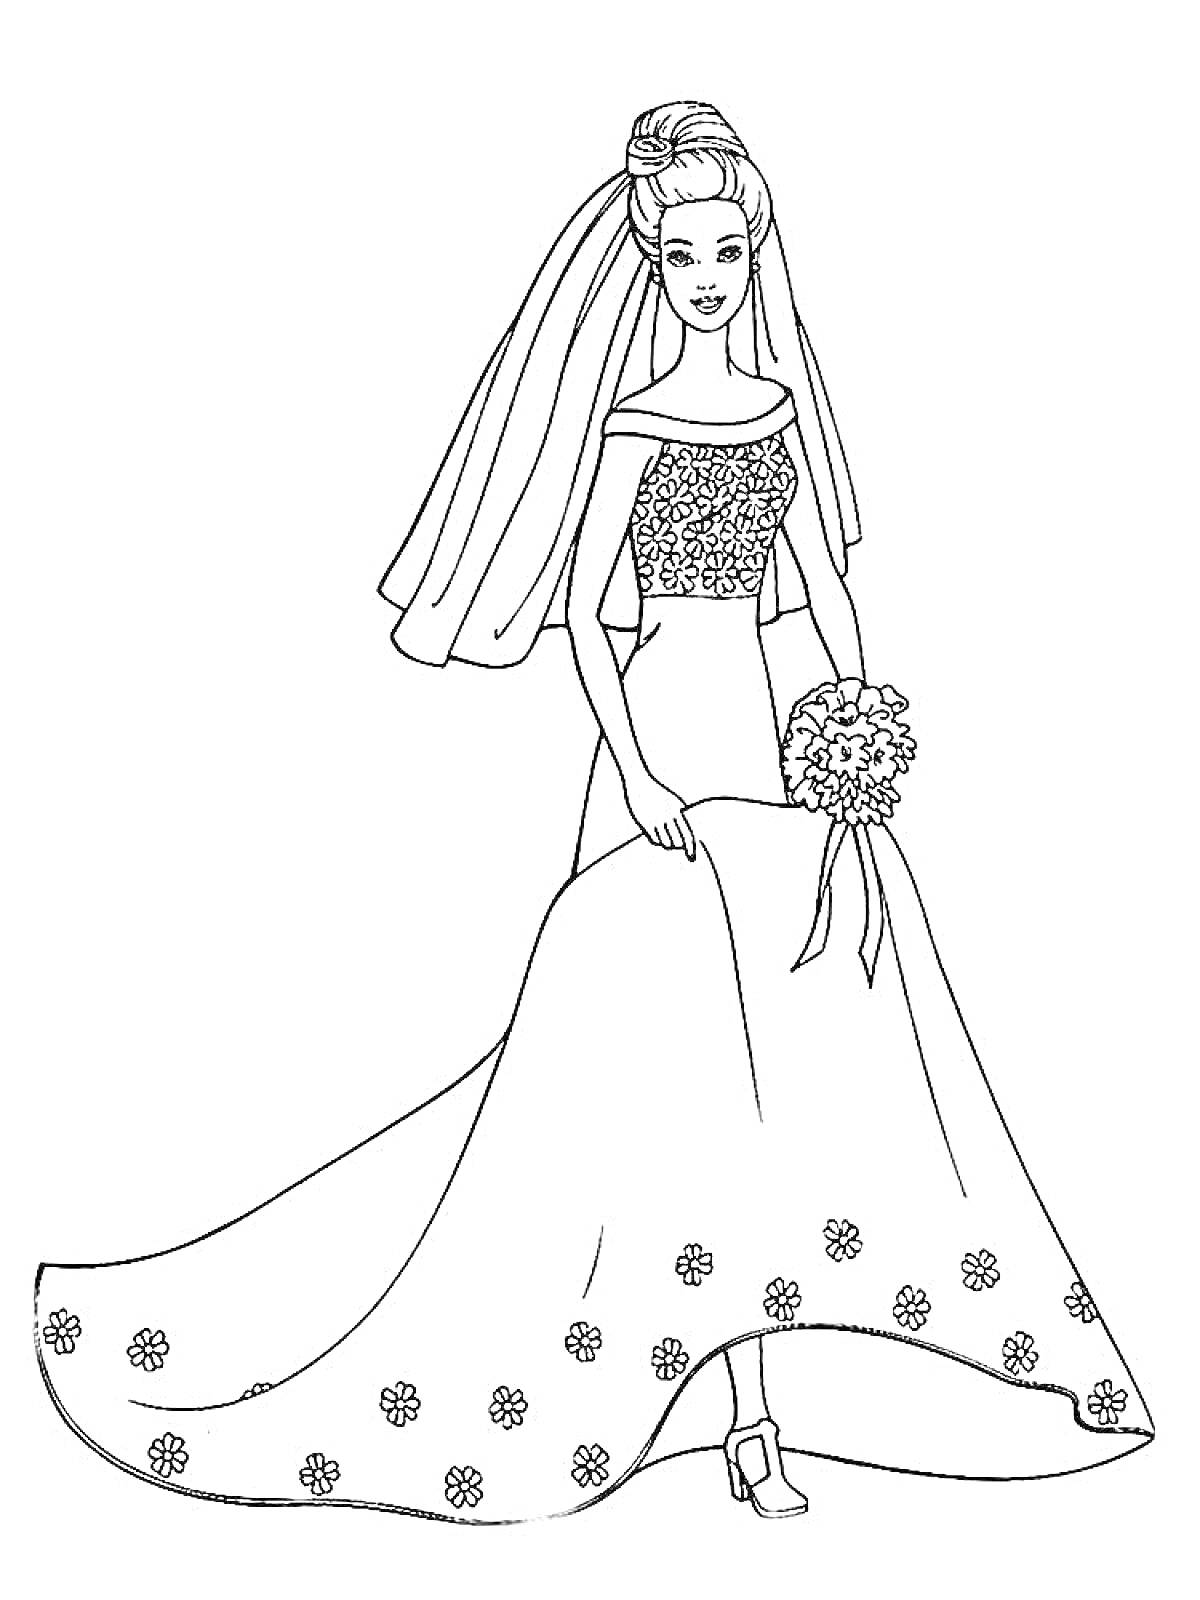 Раскраска Барби в свадебном платье с букетом цветов